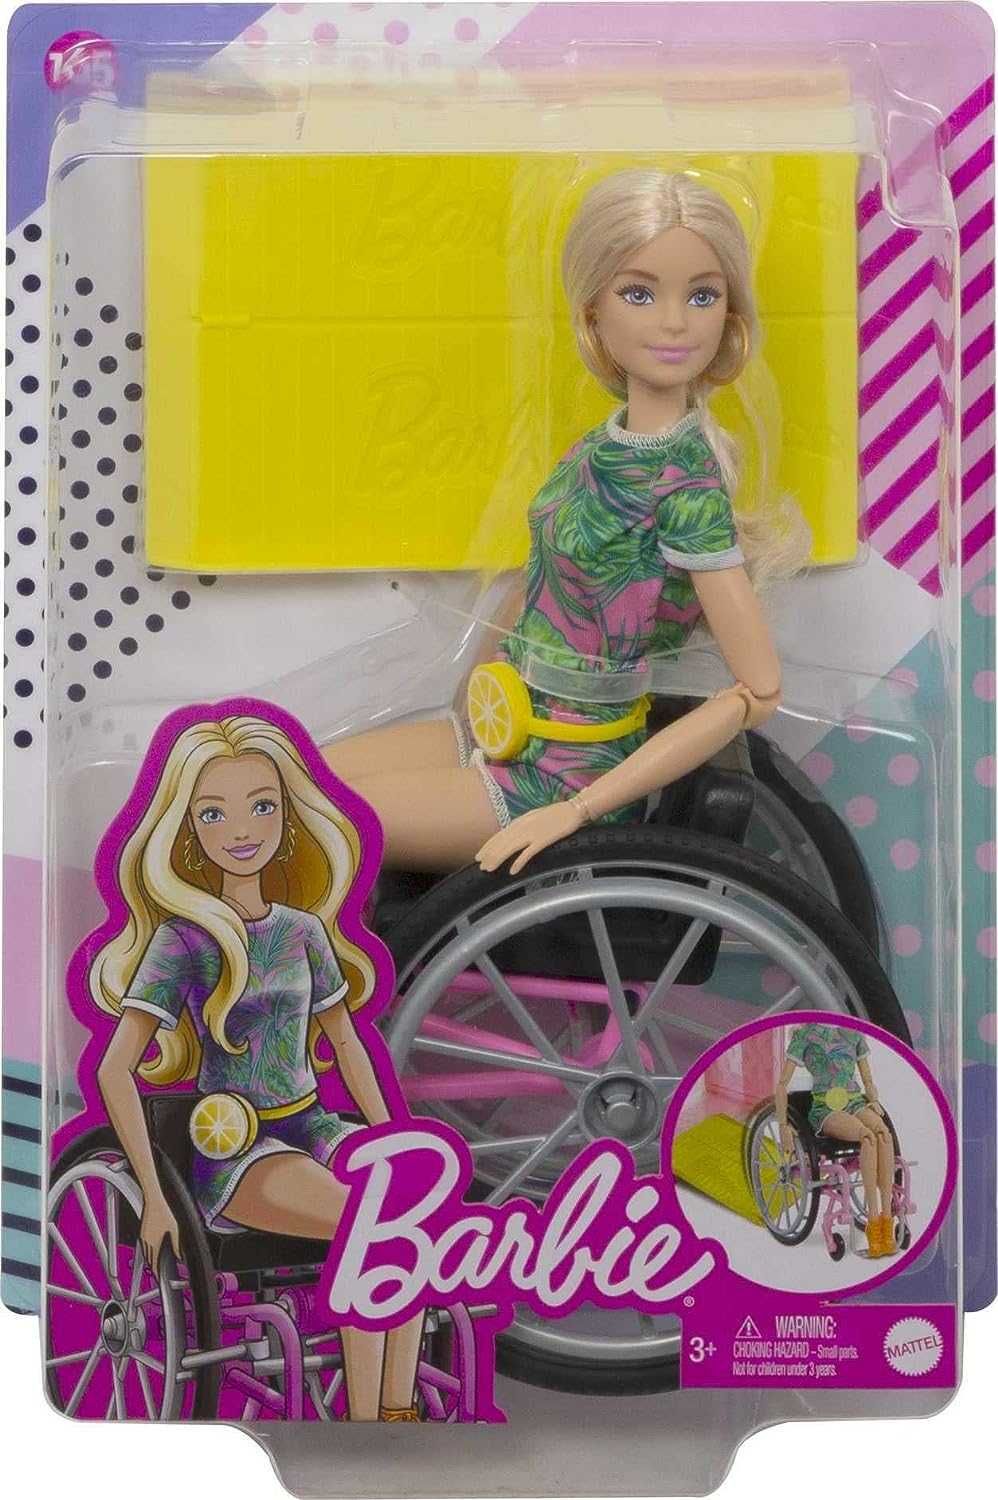 Барби шарнирная втколяске Barbie Fashionistas Doll #165 GRB93